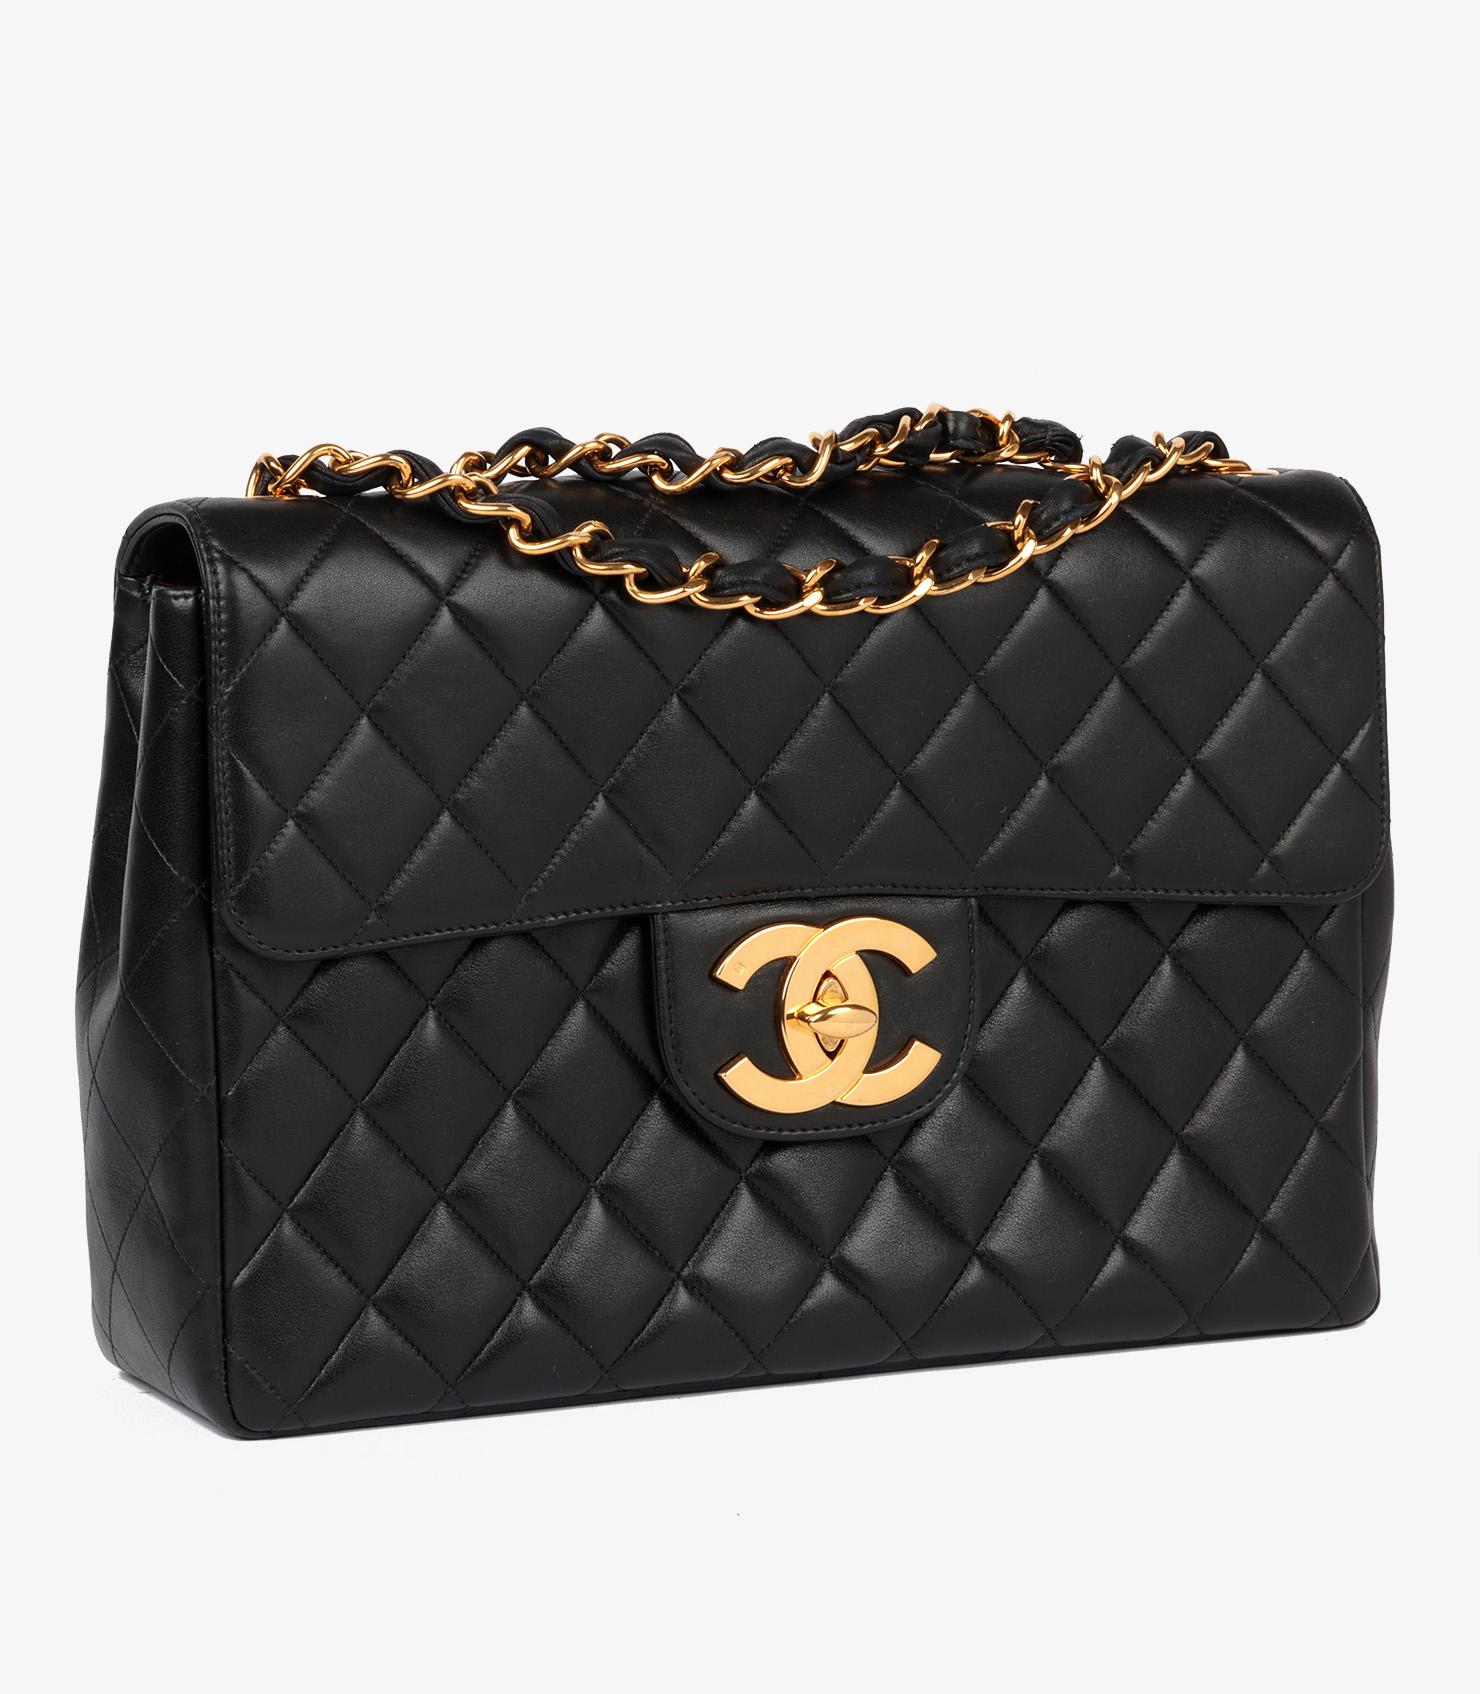 Marke: Chanel
Modell: Jumbo XL Classic Tasche mit einer Klappe
Produkttyp: Umhängetasche, Schulter
Seriennummer: 48*****
Alter: ca. 1996
Begleitet von: Pflegebroschüre, Echtheitskarte
Farbe: Schwarz
Hardware: Gold (24k plattiert)
MATERIAL(e):